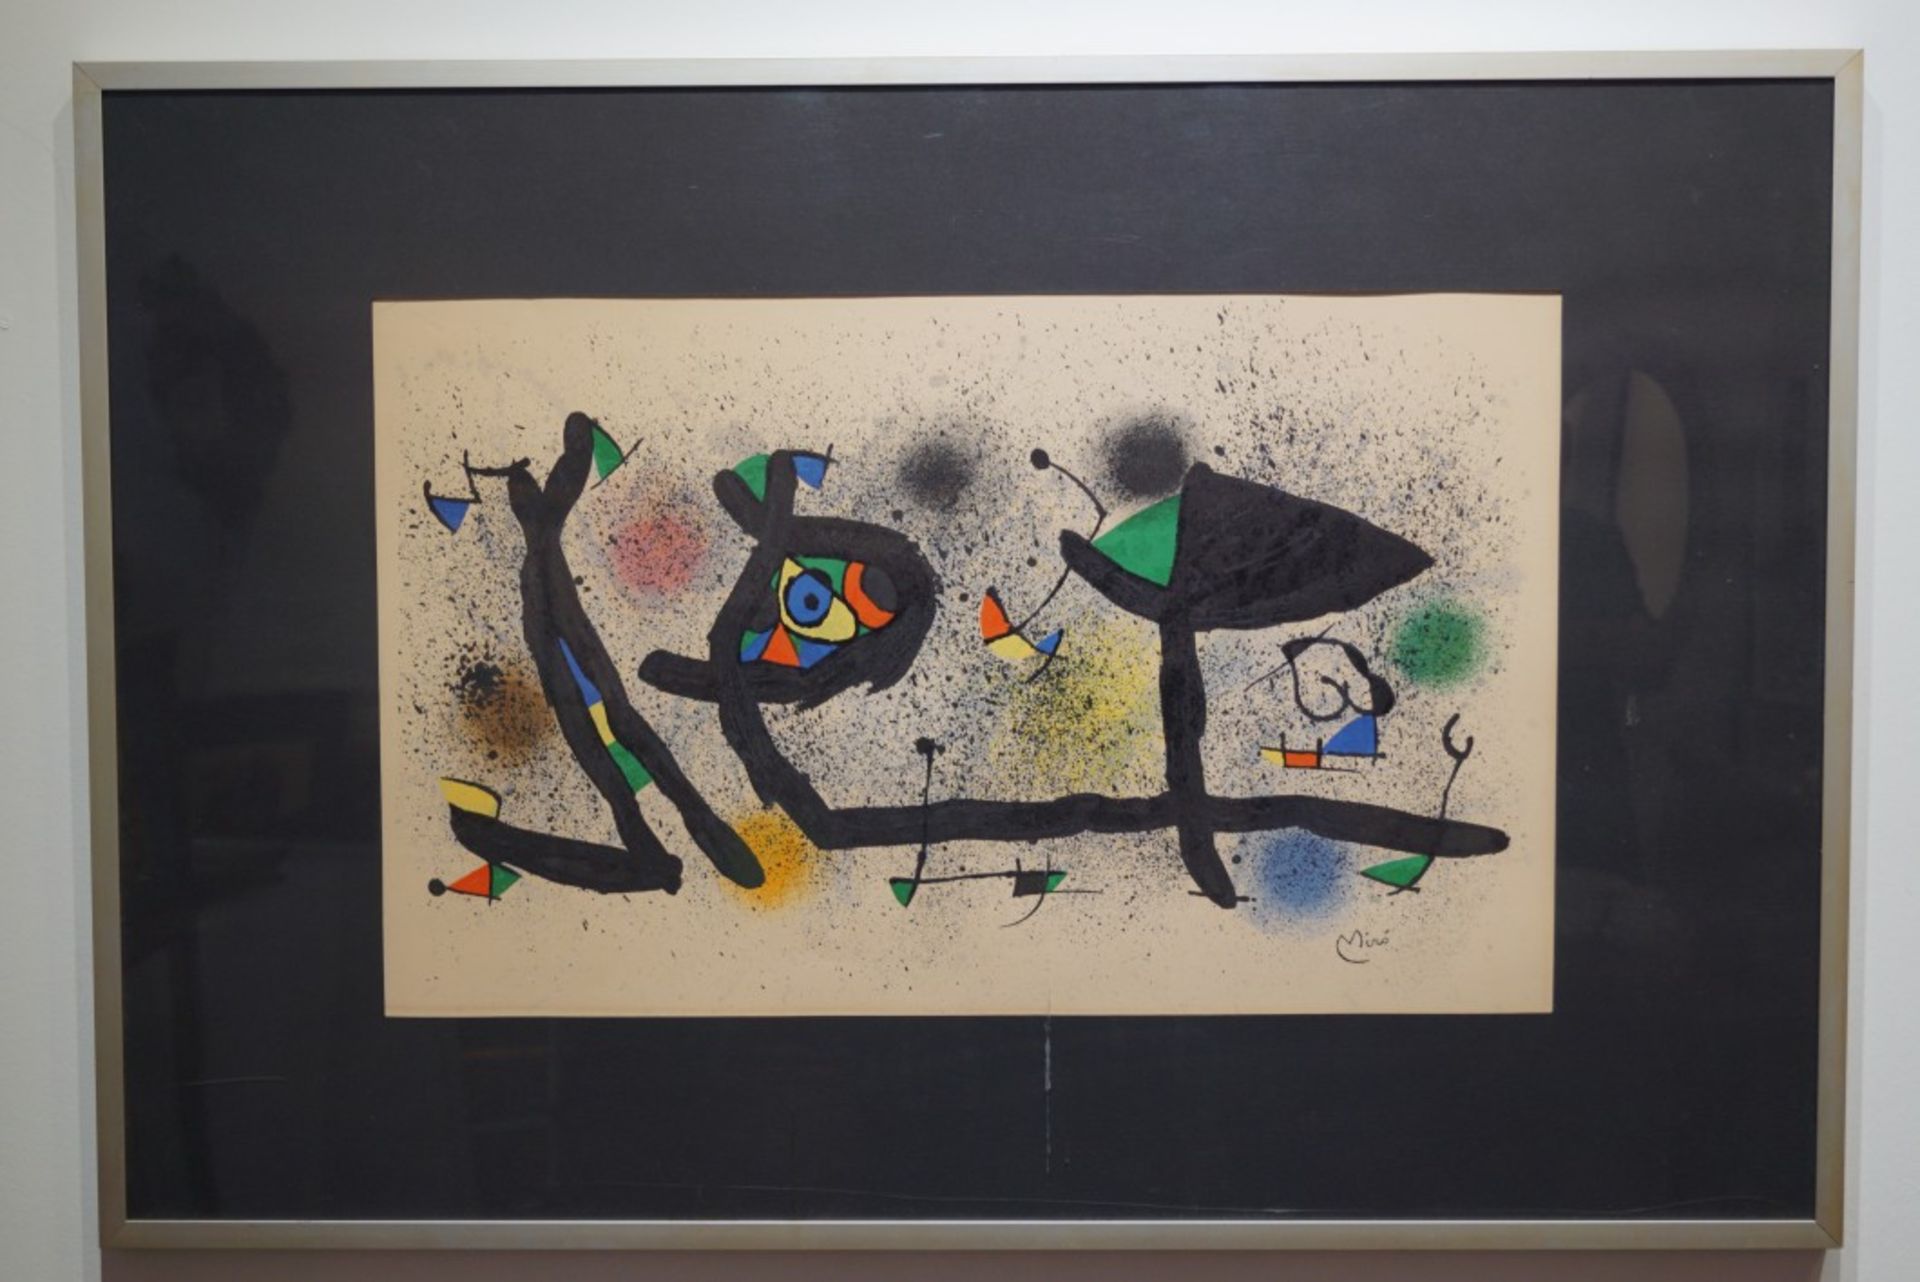 "Sculptures", Joan Miró (1893-1983)Farblithographie 1969, drucksigniert, unter Glas mit Passepartout